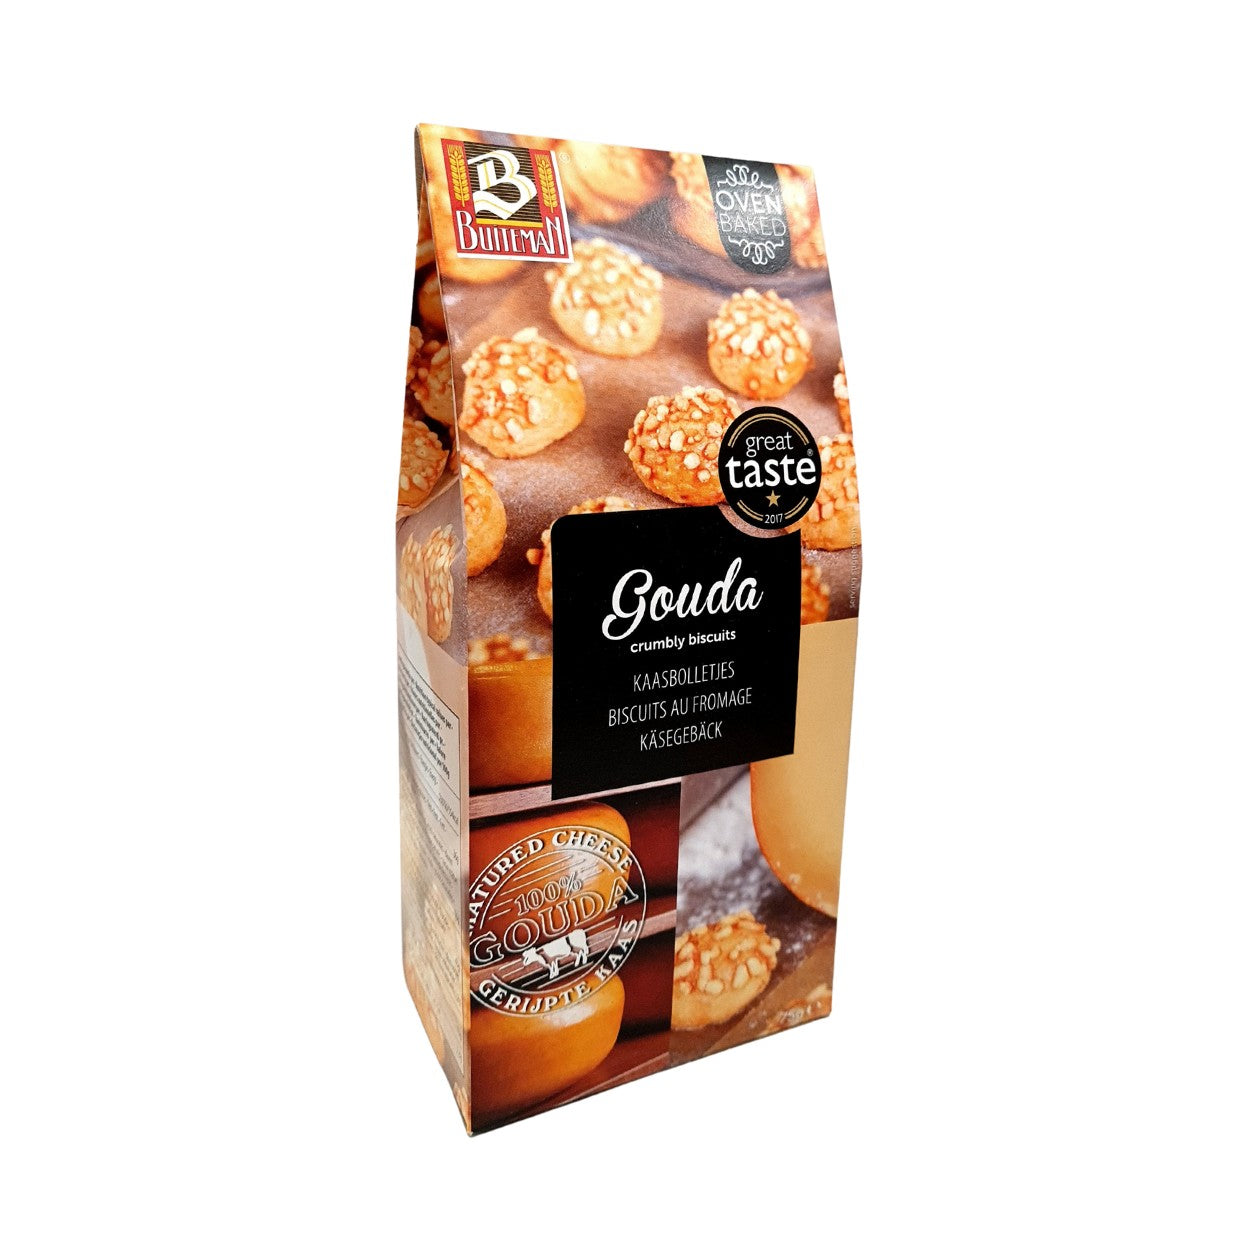 Mini Baguettes con queso Gouda. 75 g Buiteman